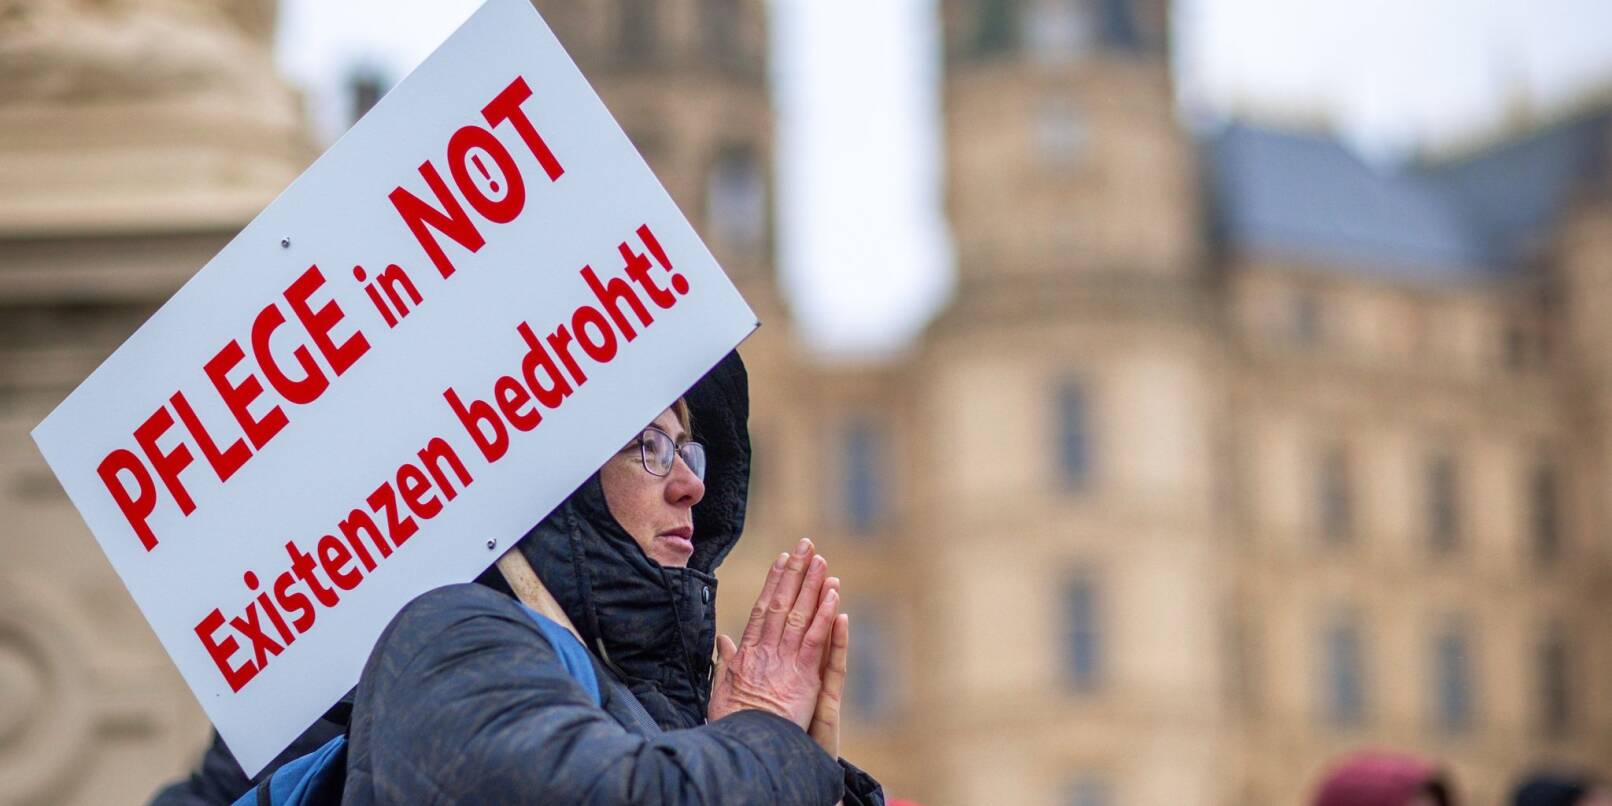 Bei einer Protestaktion vor dem Schweriner Landtag hält eine Teilnehmerin ein Schild mit der Aufschrift «Pflege in Not - Existenzen bedroht!».